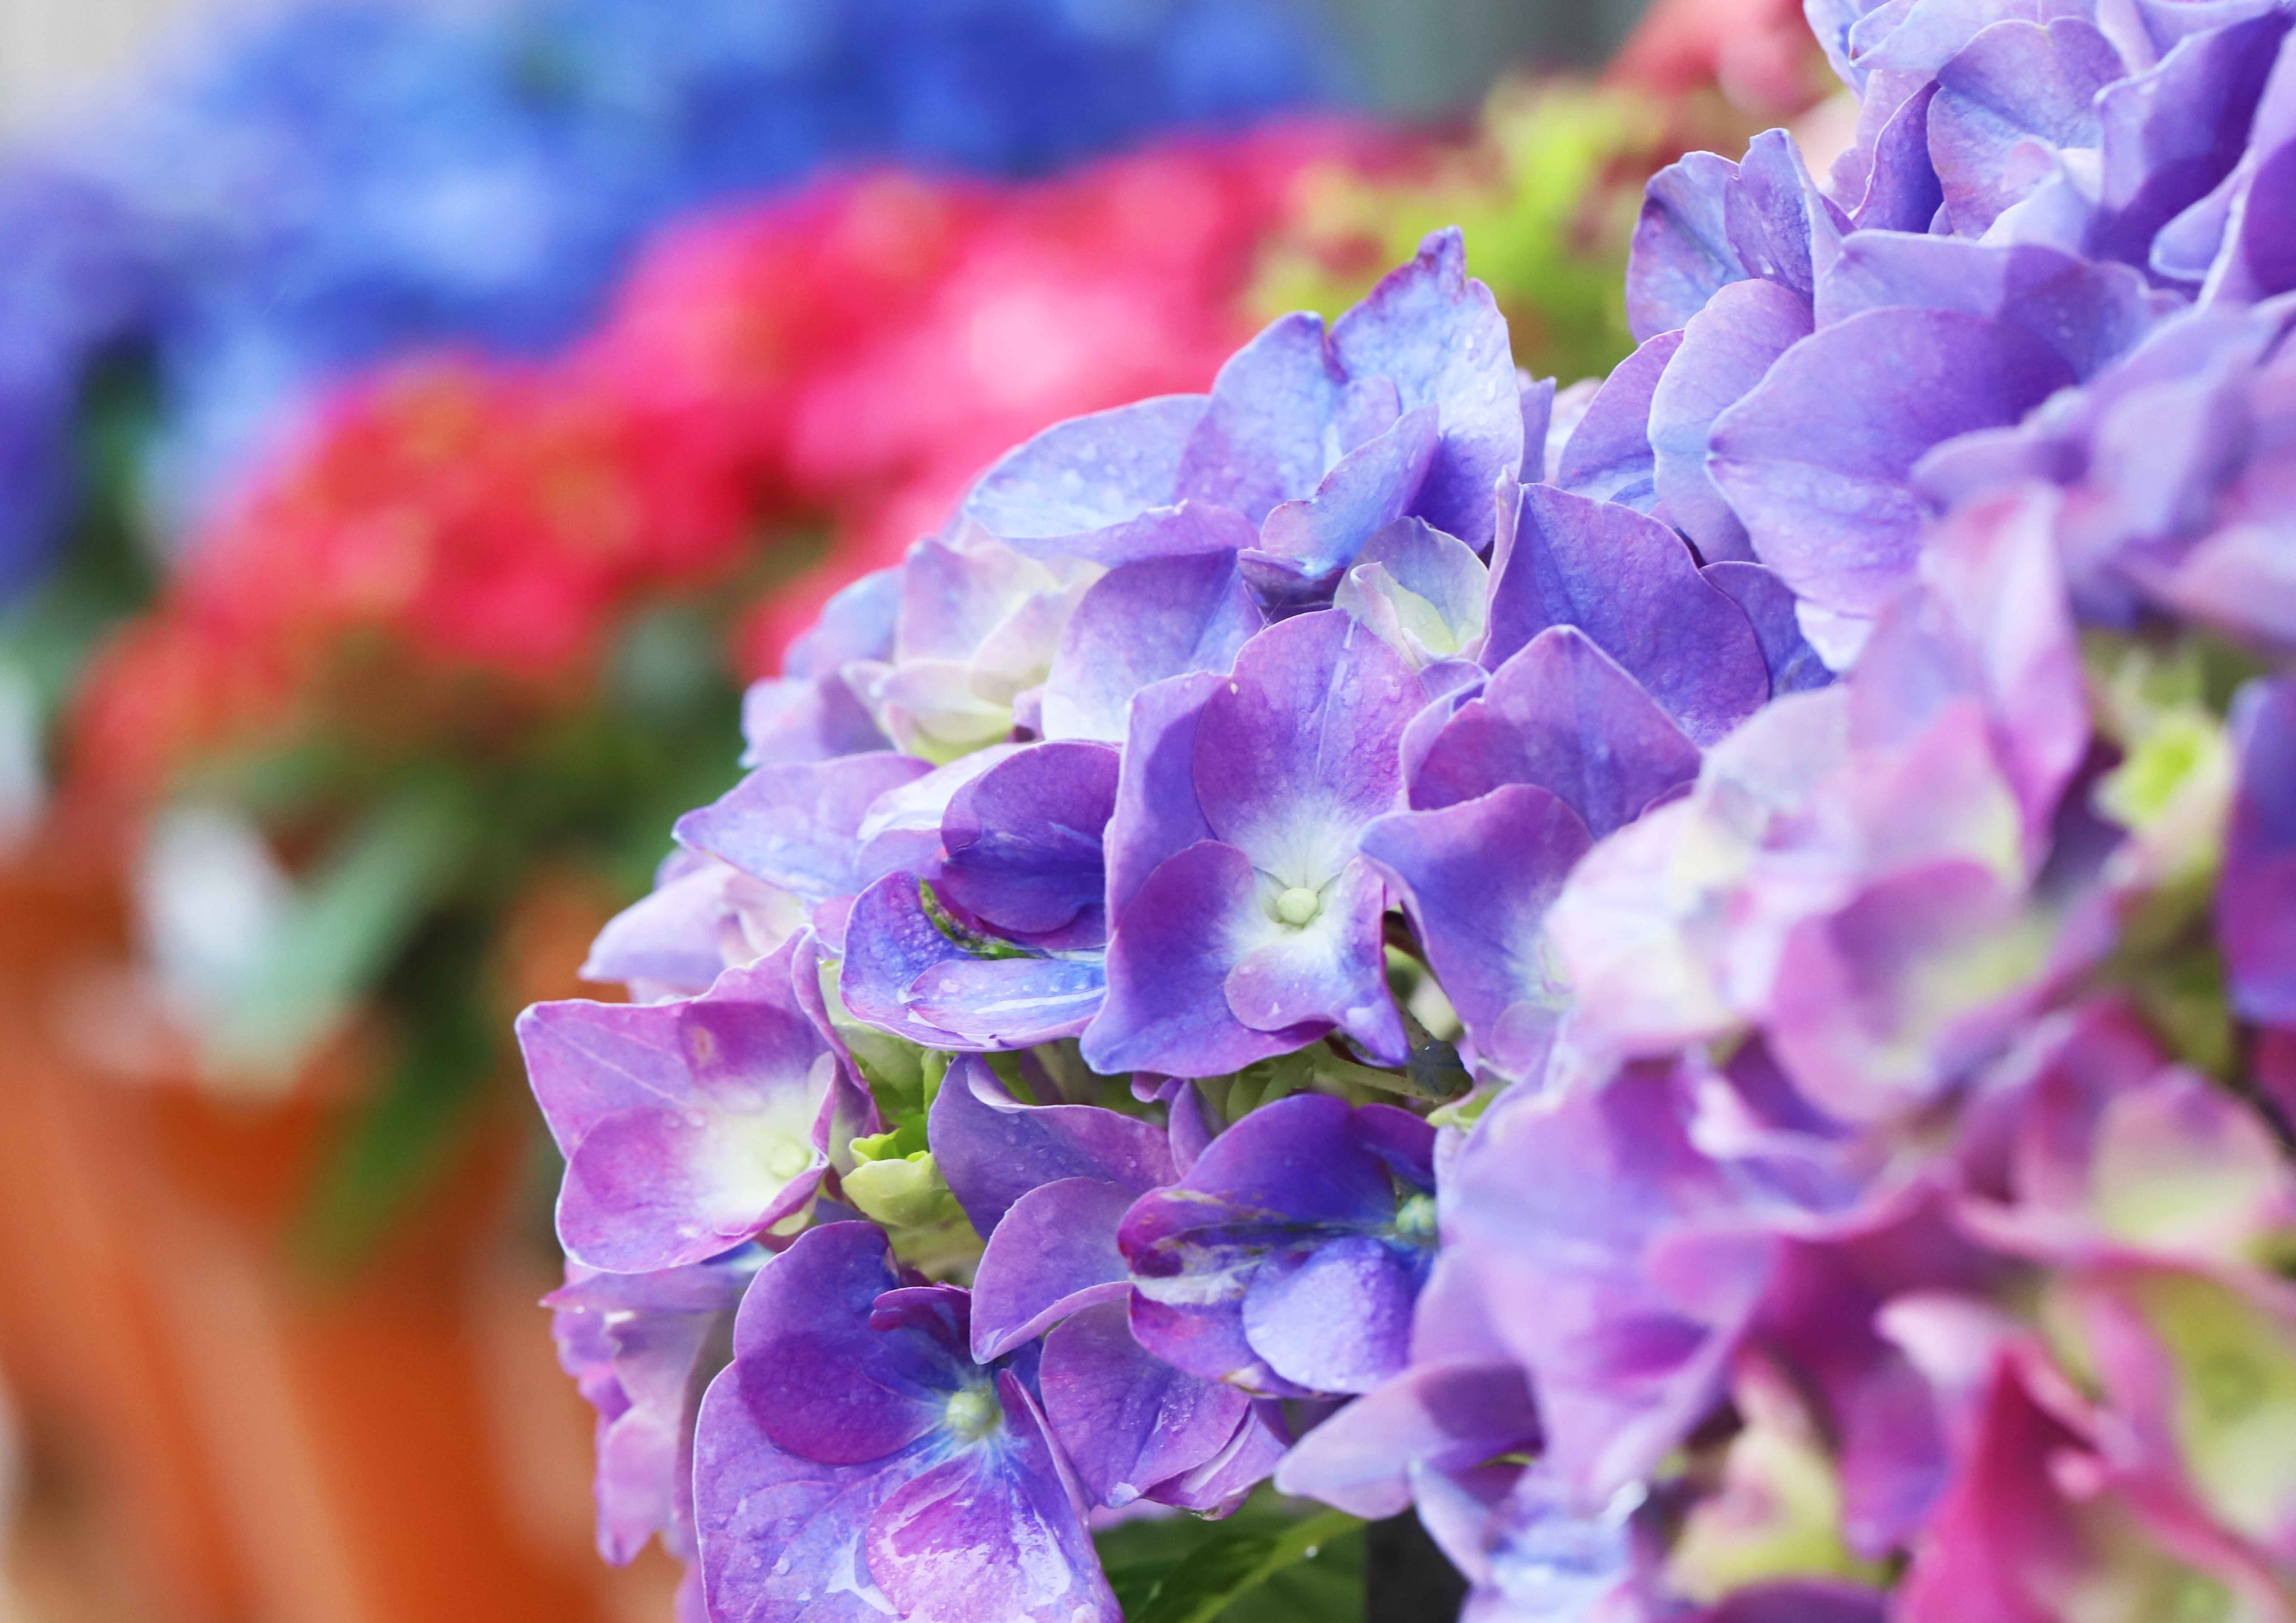 片柳弘史 雨の中に咲く紫陽花たち 紫陽花は英語でhydrangea 水の器 の意味 と言いますが 確かに 雨をしっかり受け止め たっぷり花びらに貯めています T Co Vt2v8iqwsp Twitter